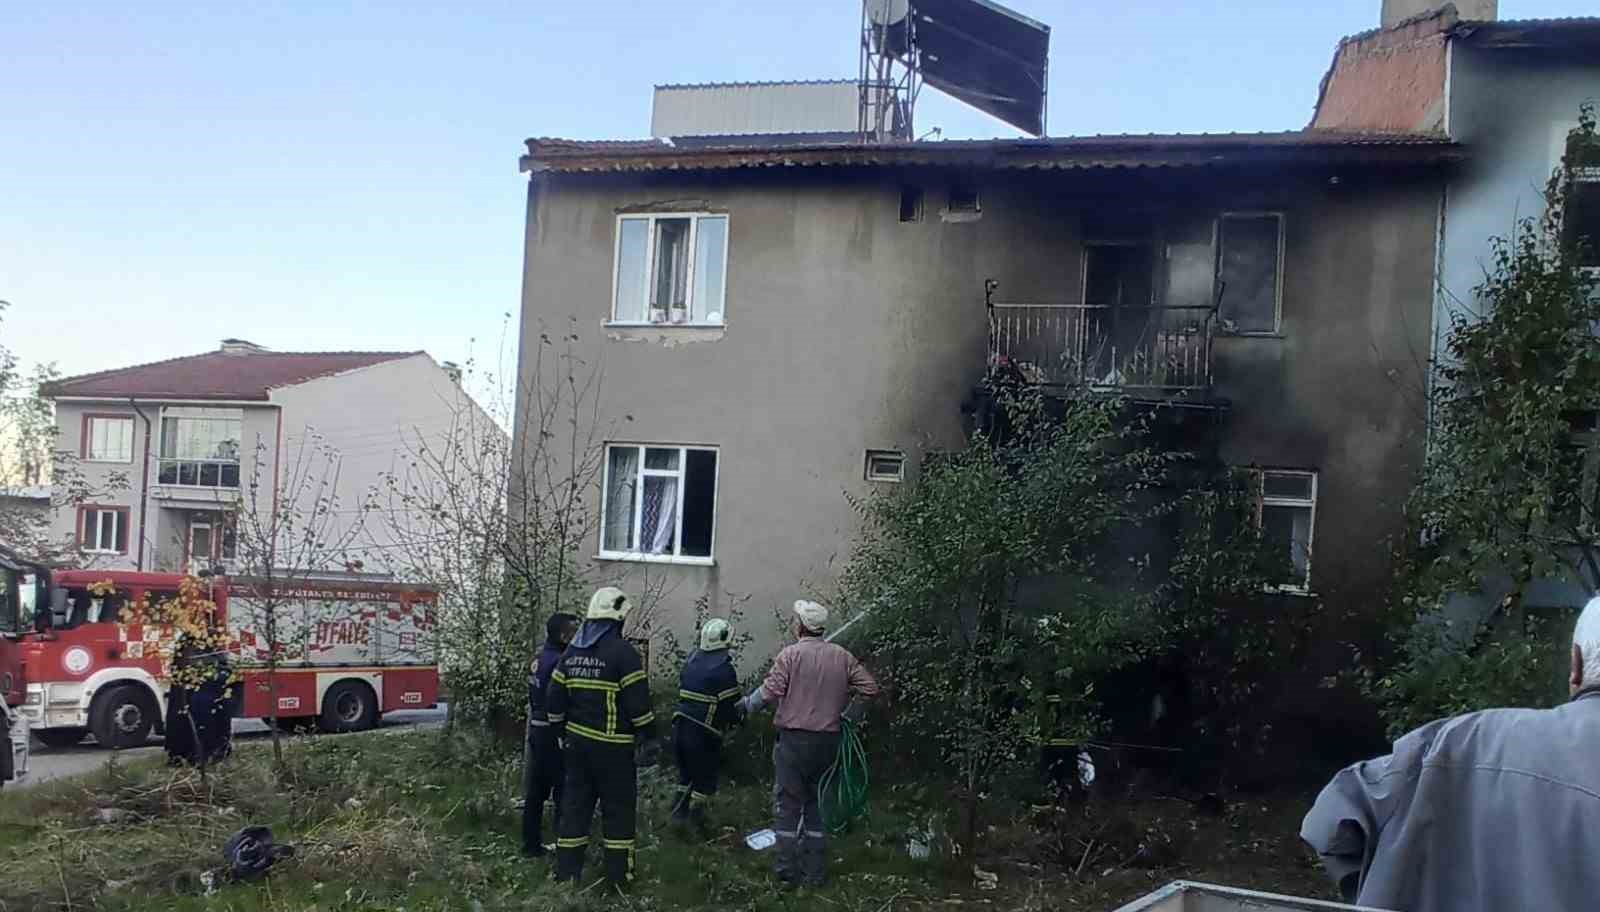 Kütahya’da yaşlı bir çiftin kaldığı evde yangın